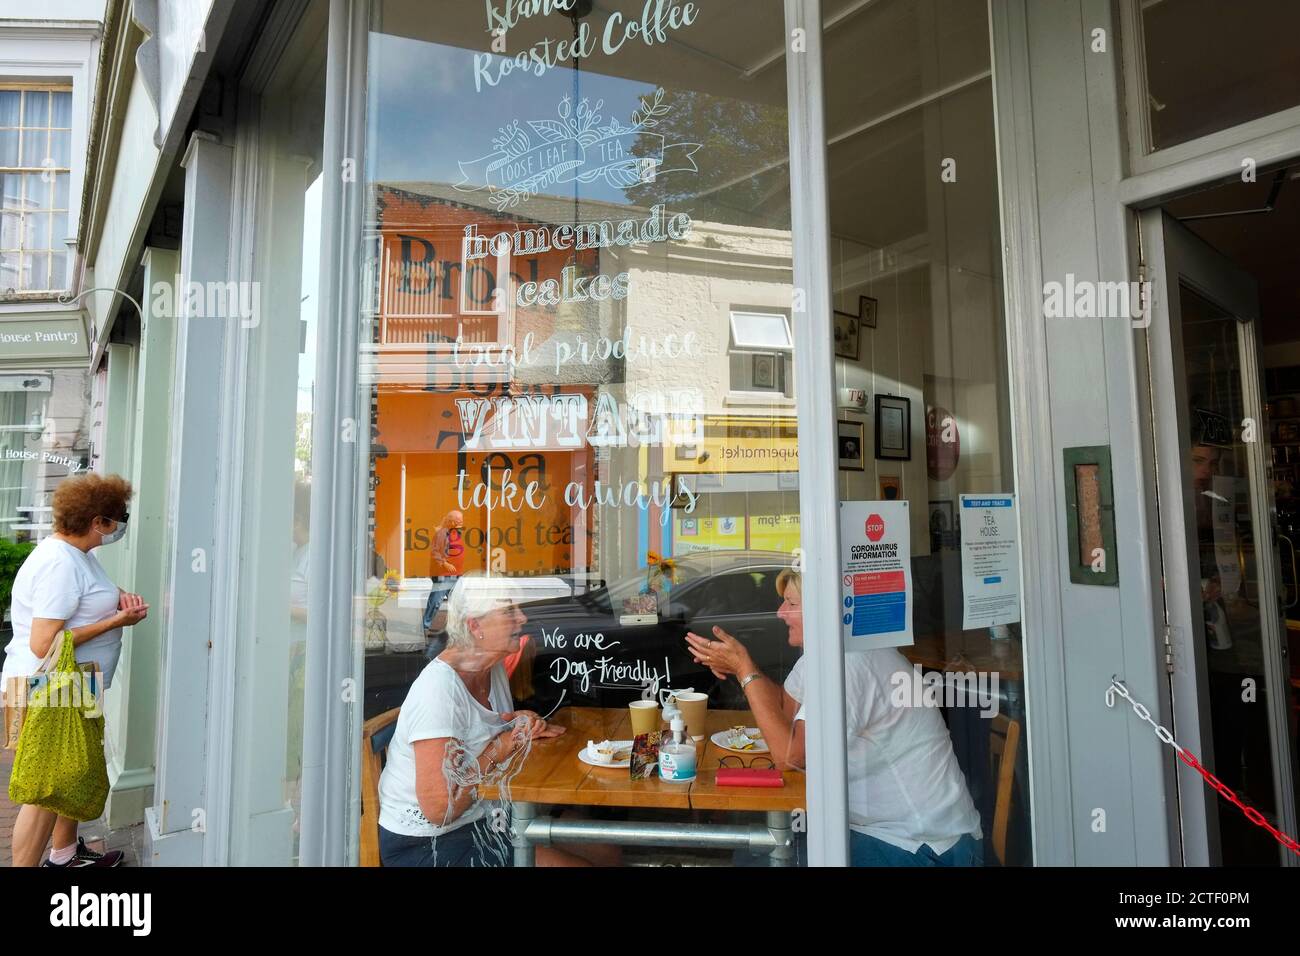 Clientes de Ventnor Isle of Wight Town Cafe a través de reflexiones de la ventana En High Street Foto de stock